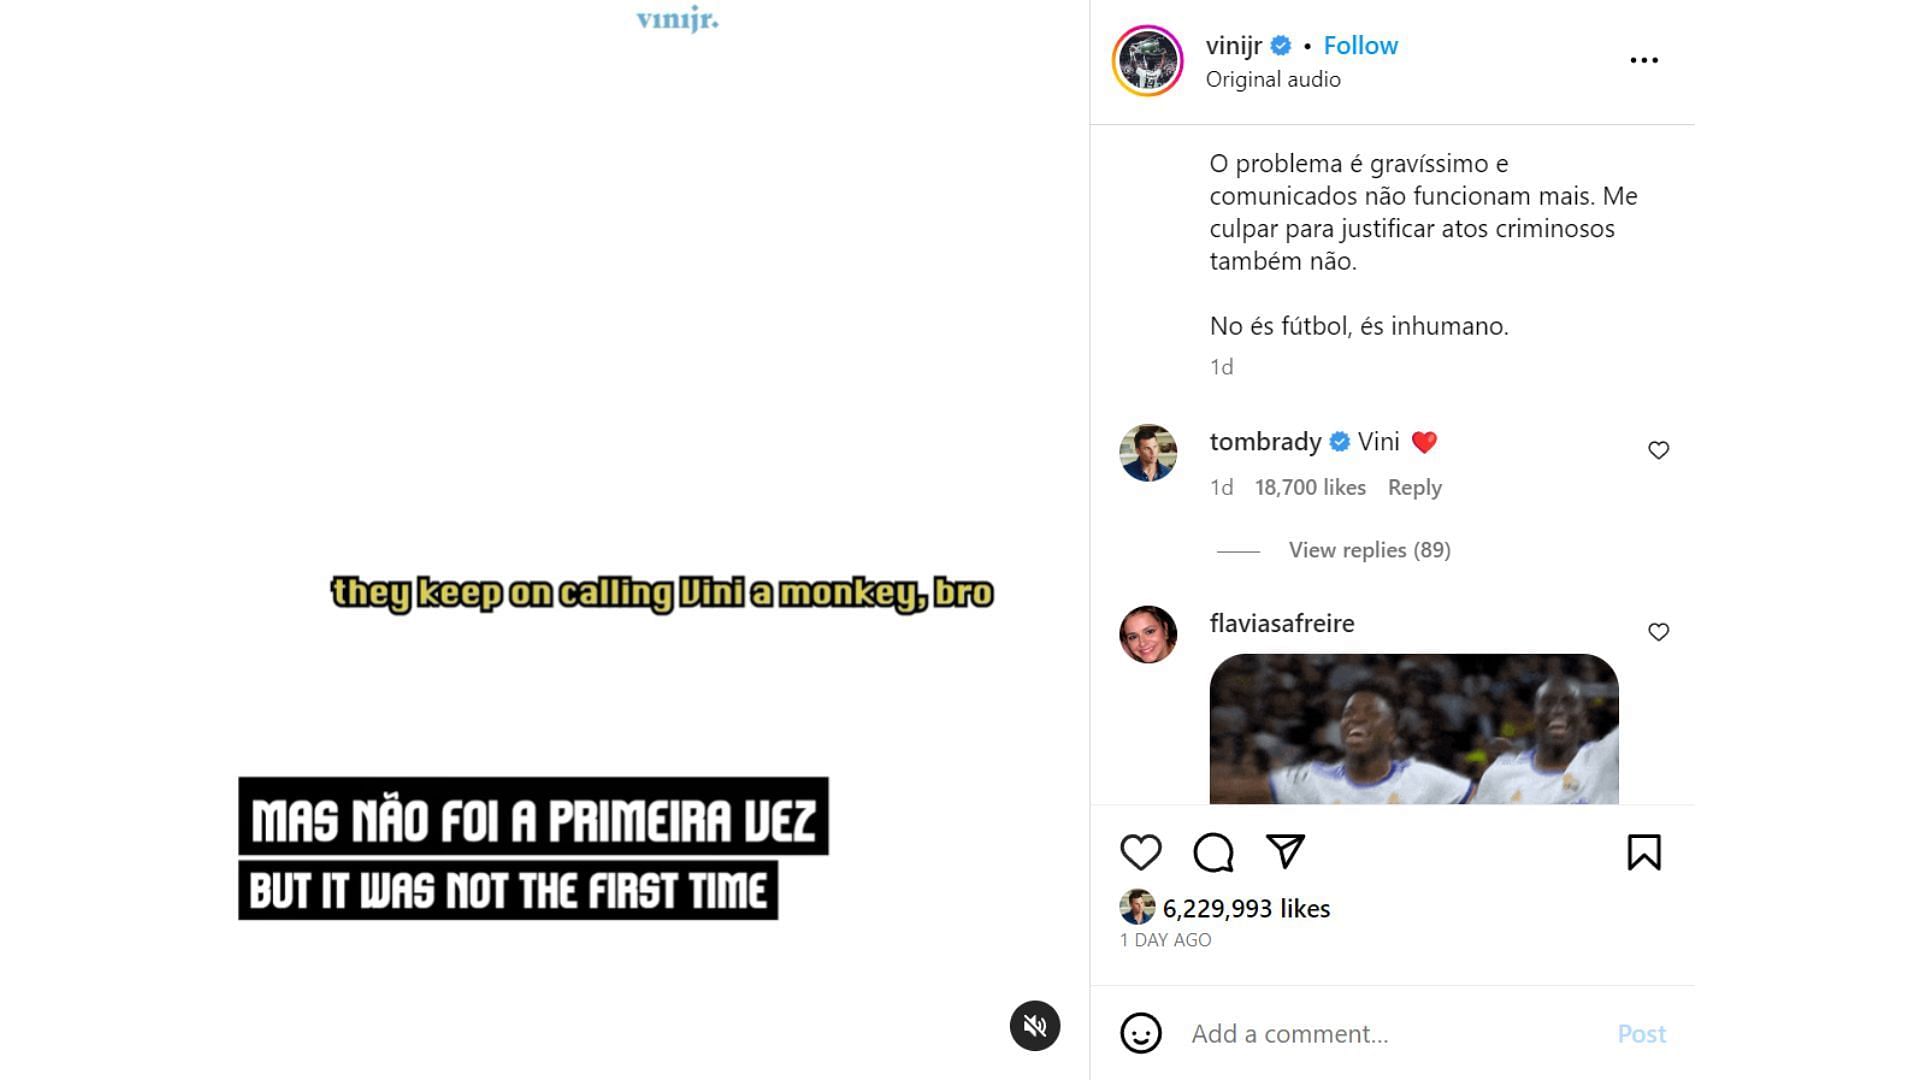 Tom Brady shows support on Vinicius Jr&#039;s IG post. (Image credit: @vinijr IG account)